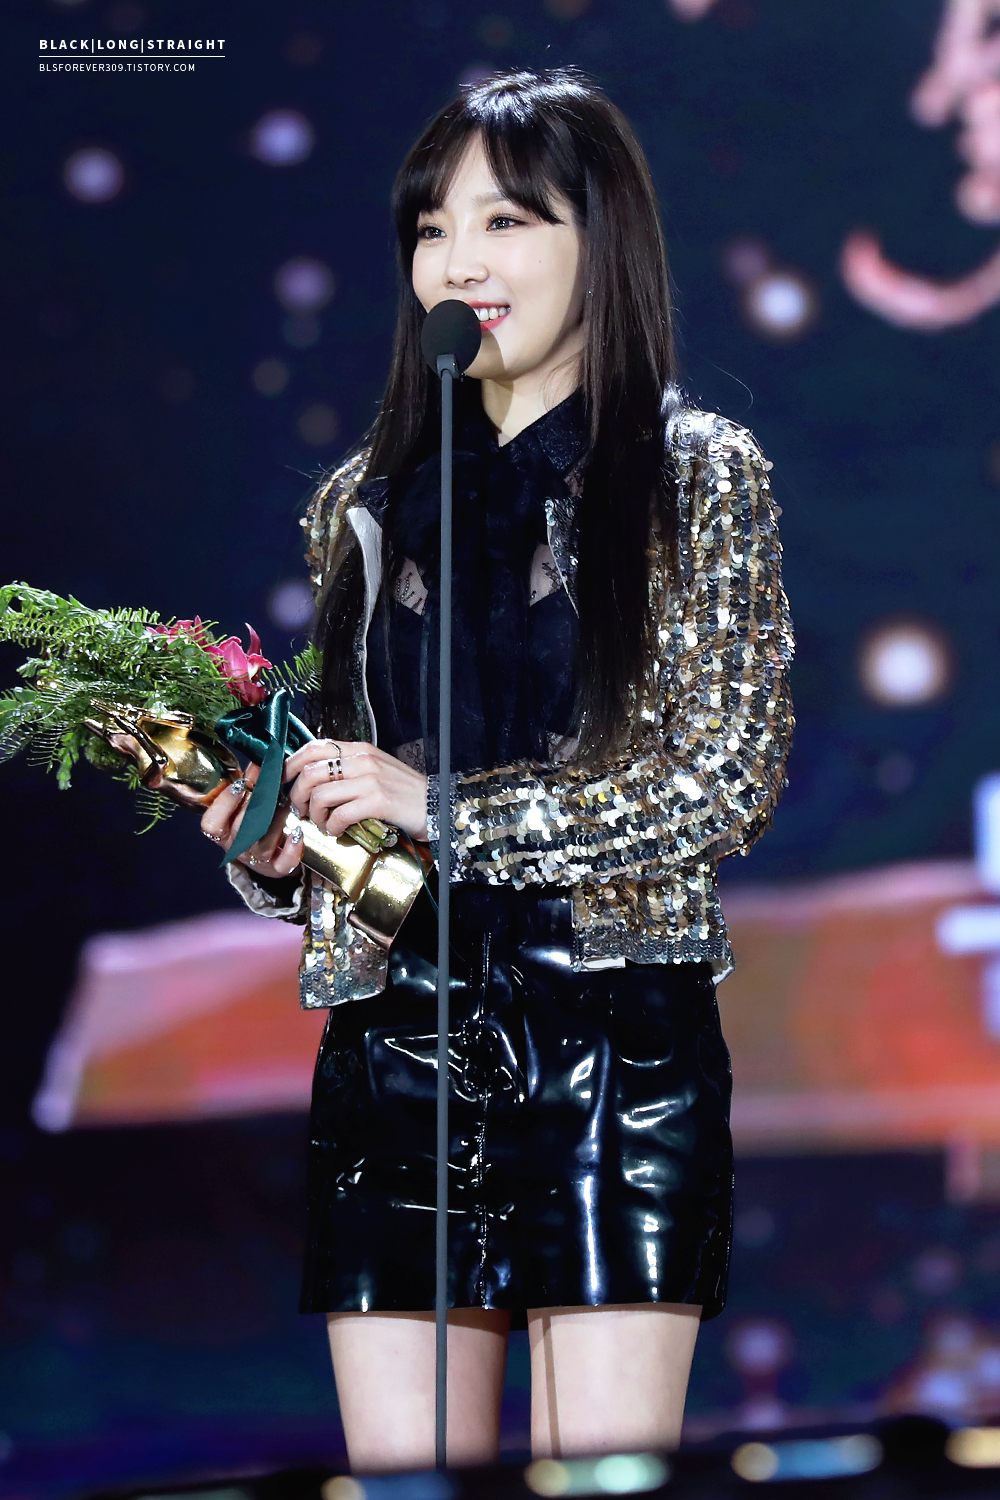 [PIC][13-01-2017]Hình ảnh mới nhất từ "31st Golden Disk Awards" của TaeYeon và MC SeoHyun - Page 3 21024C35587F061B0E296C